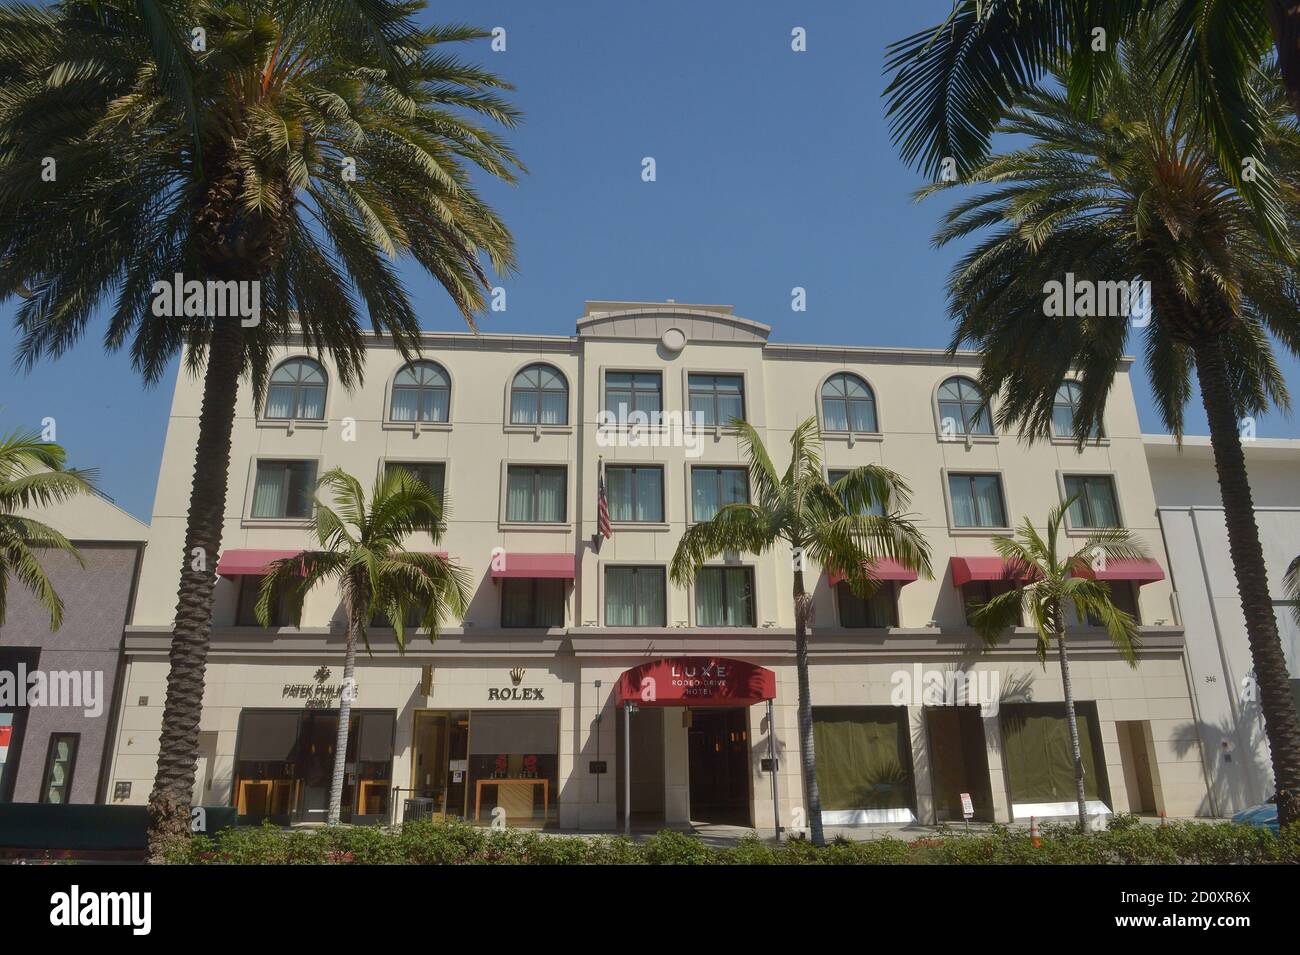 Beverly Hills, Usa. Oktober 2020. Das Luxe Rodeo Drive Hotel in Beverly Hills ist am Freitag, den 2. Oktober 2020 abgebildet. Das Hotel wurde geschlossen, unter Berufung auf die finanziellen Auswirkungen der COVID-19-Krise, da der steile Rückgang im Tourismus und Geschäftsreisen die Hotellerie zerstört hat. Das Luxe Rodeo Drive Hotel ist das erste High-End-Hotel in der Gegend von Los Angeles, das aufgrund der Pandemie aus dem Geschäft geht. Foto von Jim Ruymen/UPI Kredit: UPI/Alamy Live Nachrichten Stockfoto